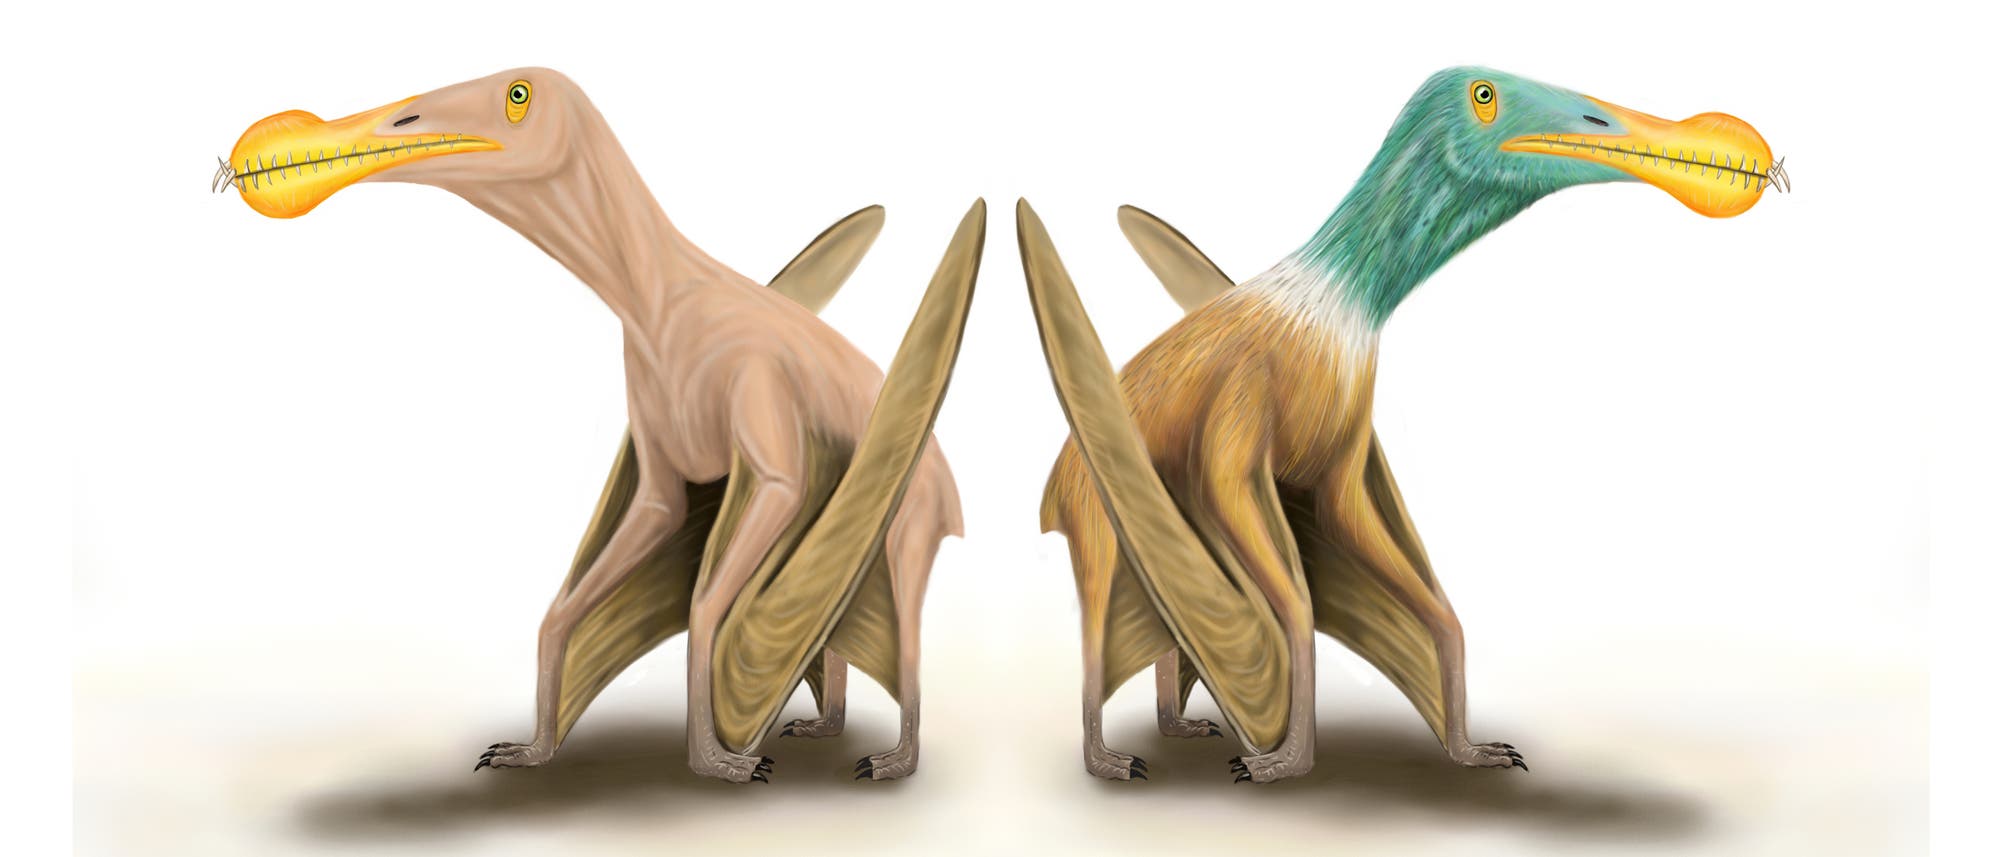 Hatten Pterosaurier ein Federkleid (rechts), oder waren sie kahl (links)?